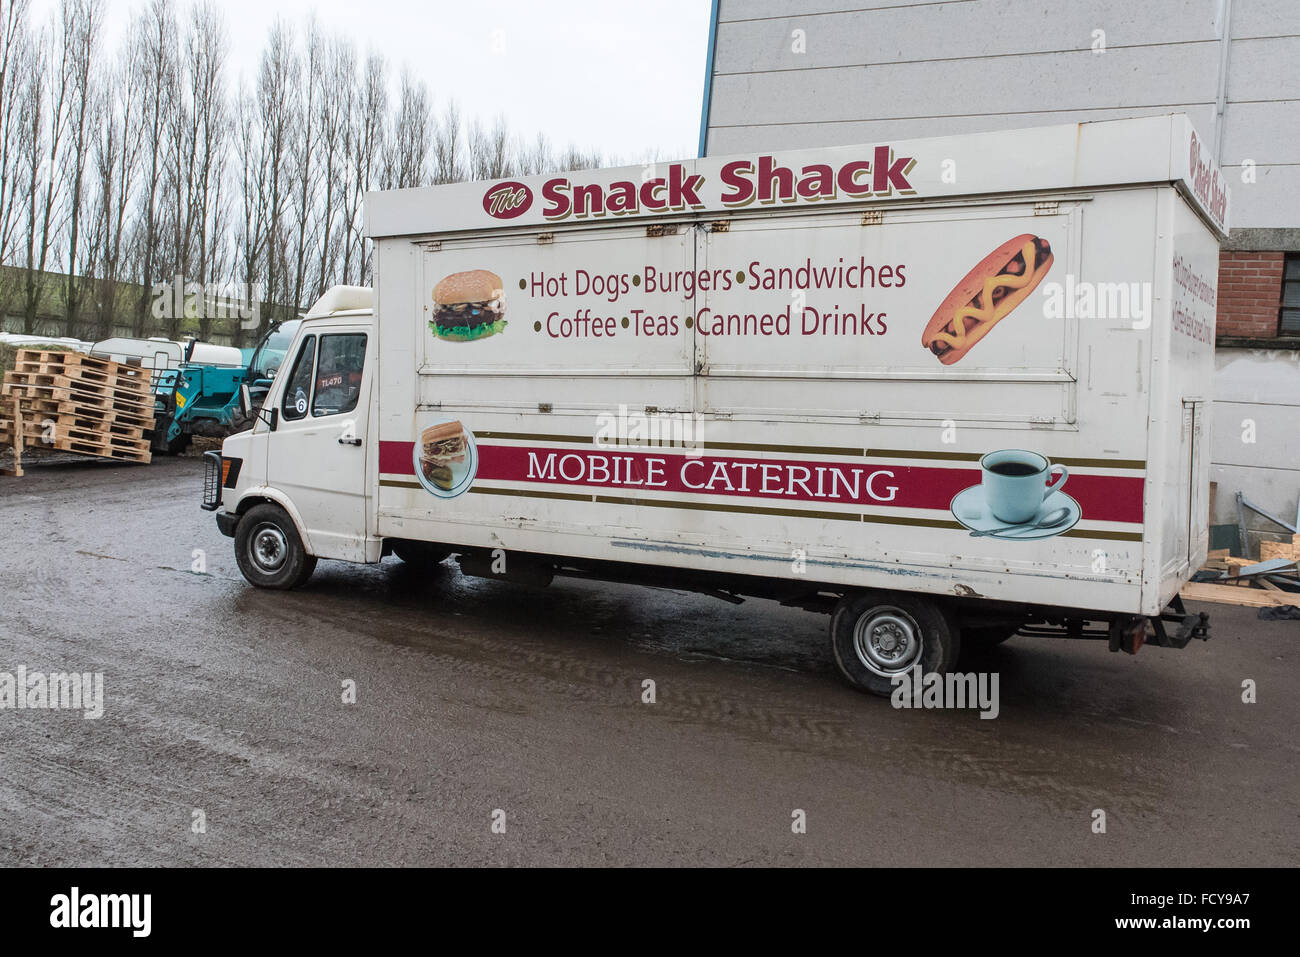 Die repurposed Snack Shack van bereit für die halbe Stunde Fahrt nach Dunkerque Lager Essen zu liefern.  Flüchtling Gemeinschaftsküche ein Stockfoto